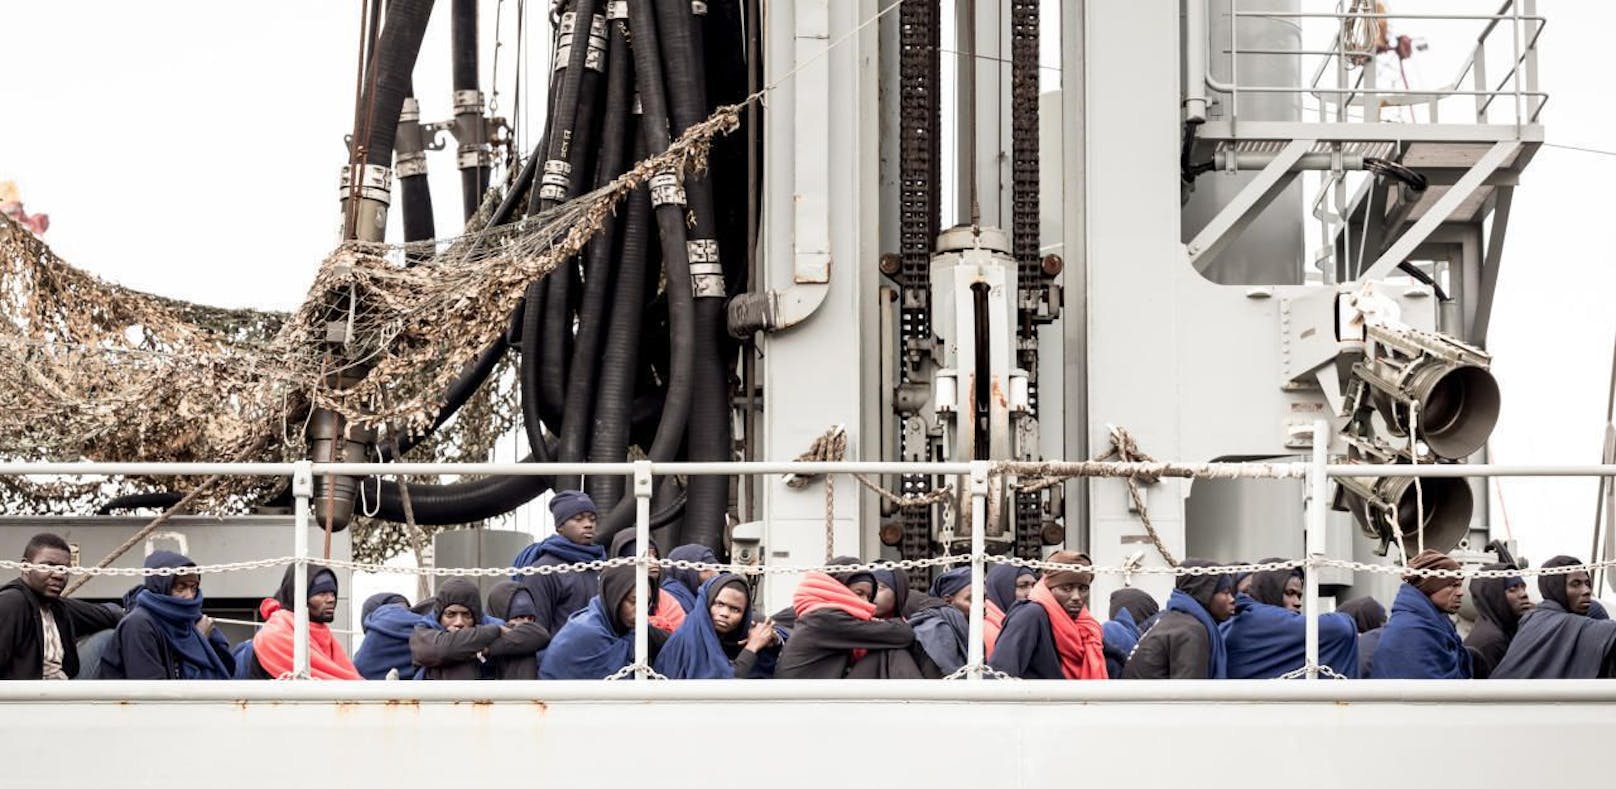 Einigung auf umfassendes EU-Antischlepperpaket erzielt, dafür Rückschlag bei Frontex-Aufstockung.